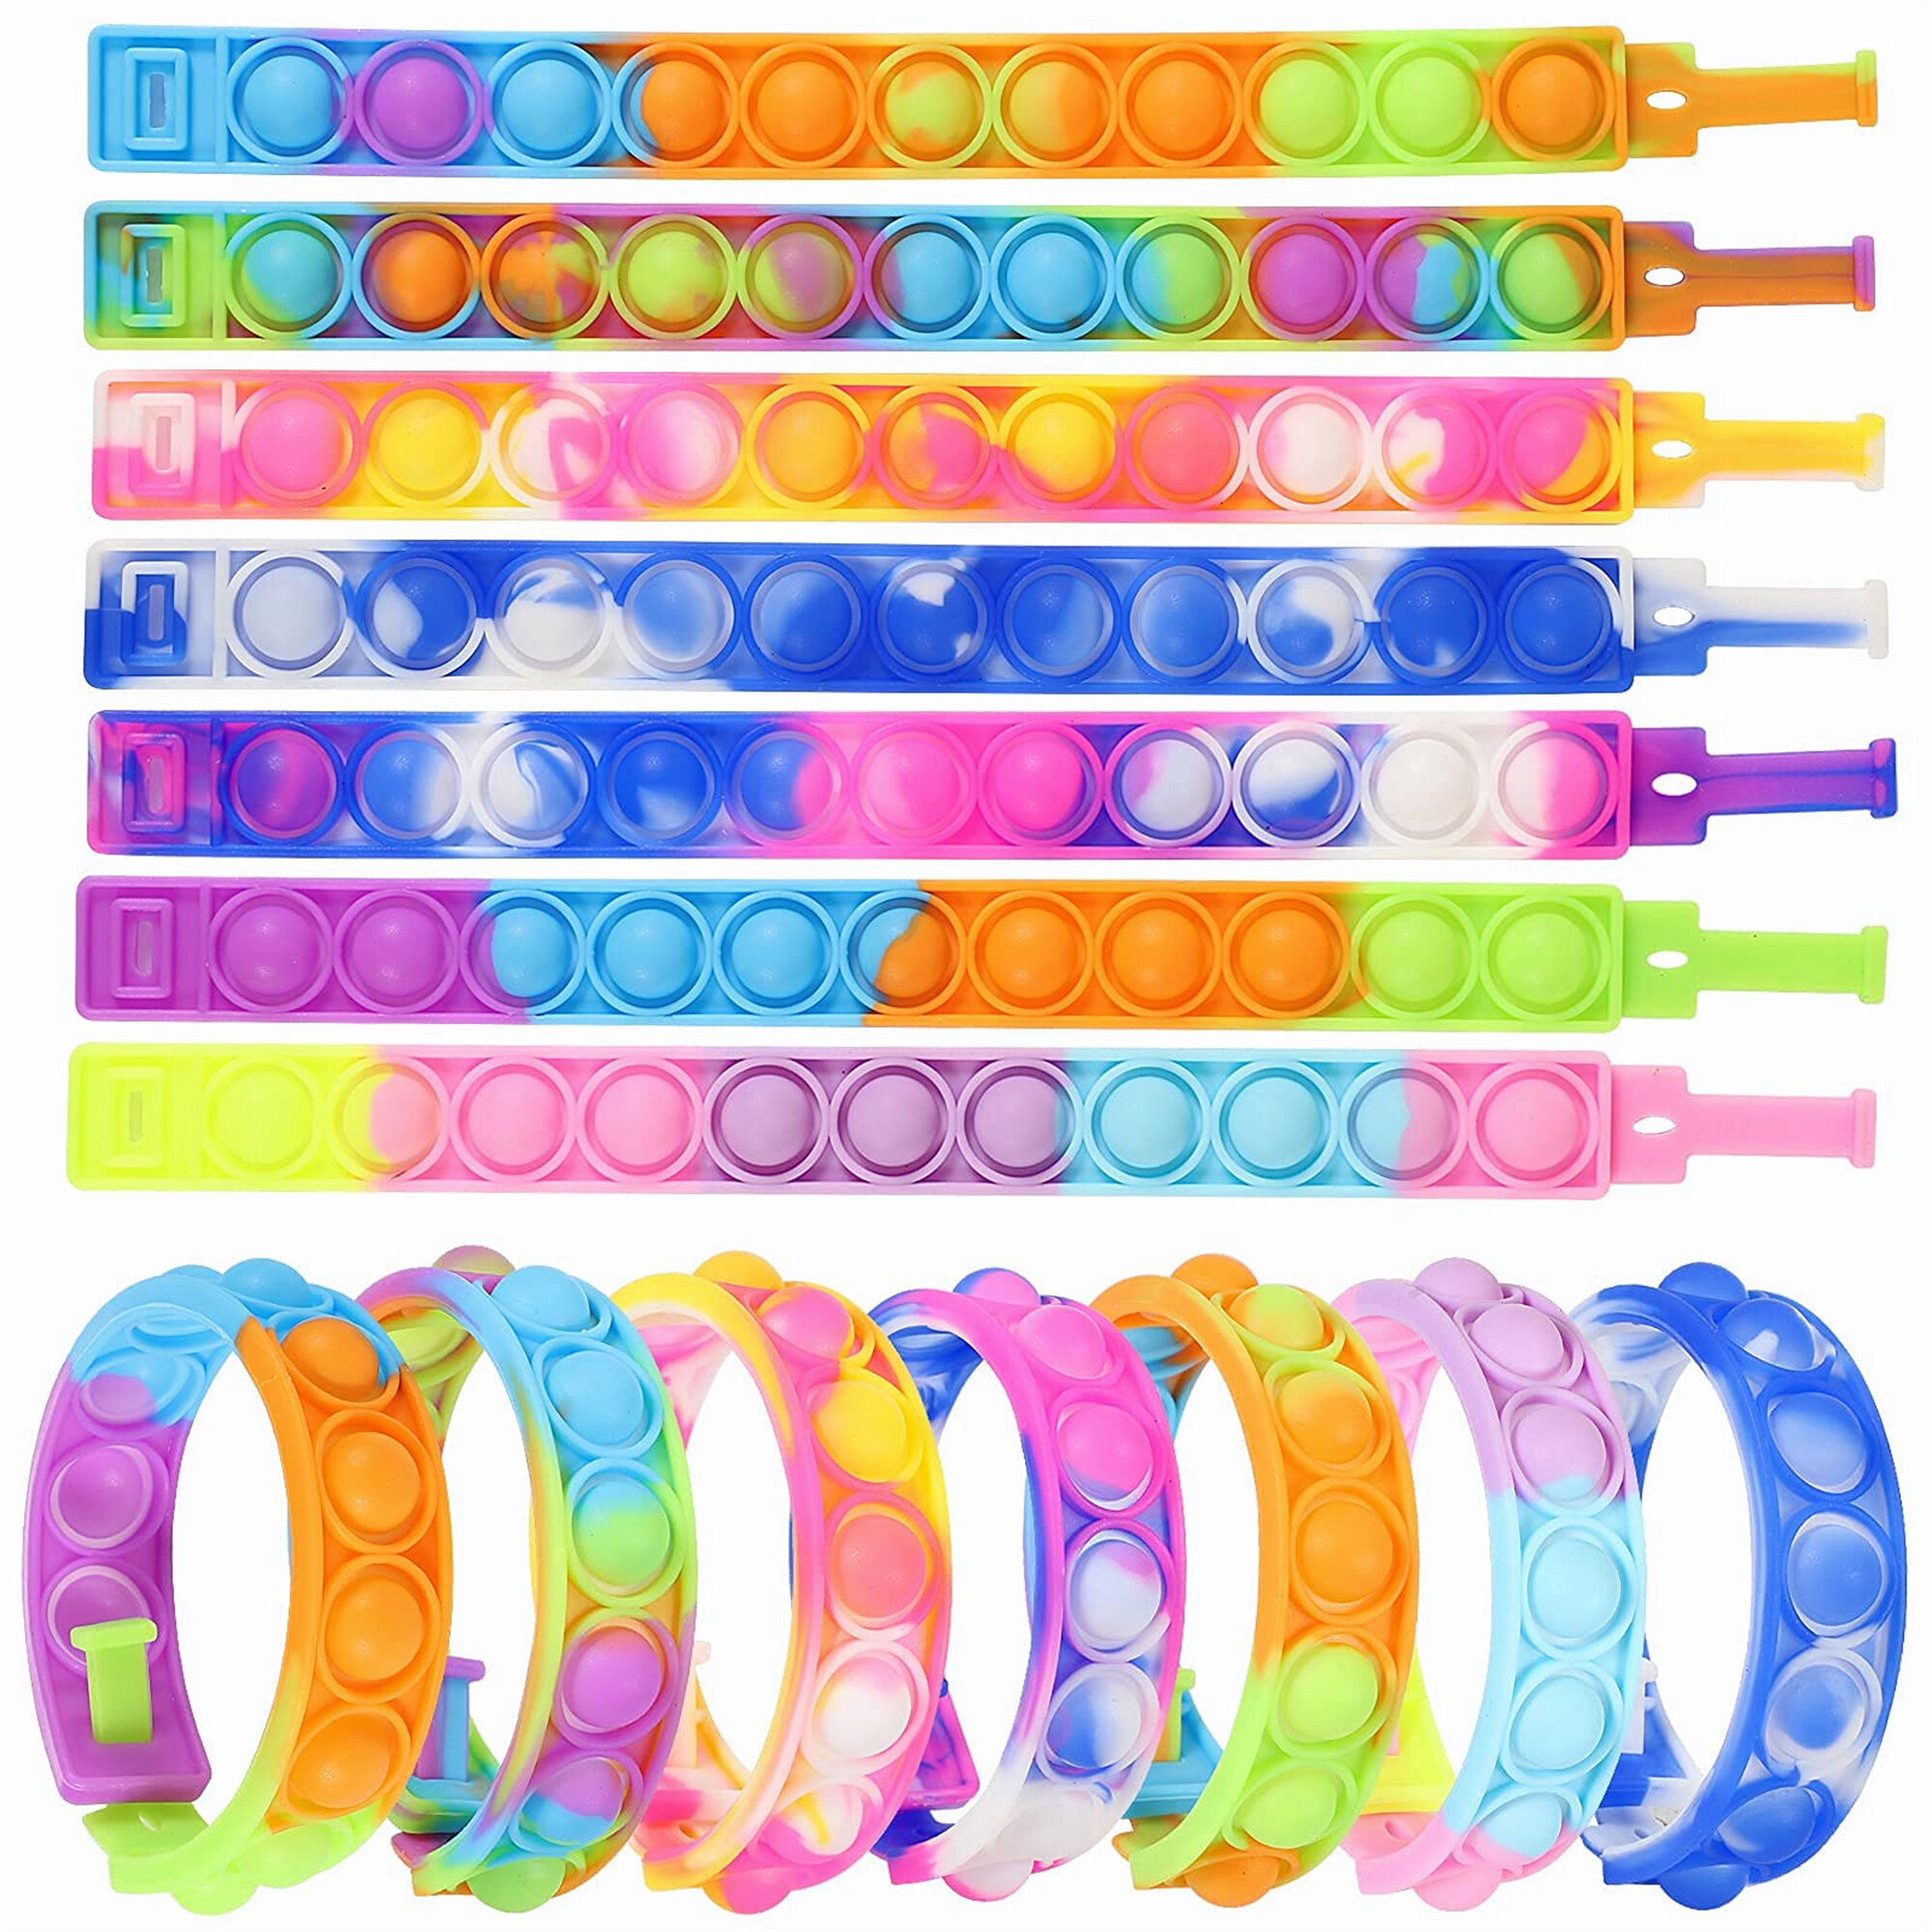 Multicolor Stress Relief Finger Press Bracelet for Kids and Adults ADHD ADD Autism 14PCS Push Pop Fidget Toy Fidget Bracelet Durable and Adjustable 